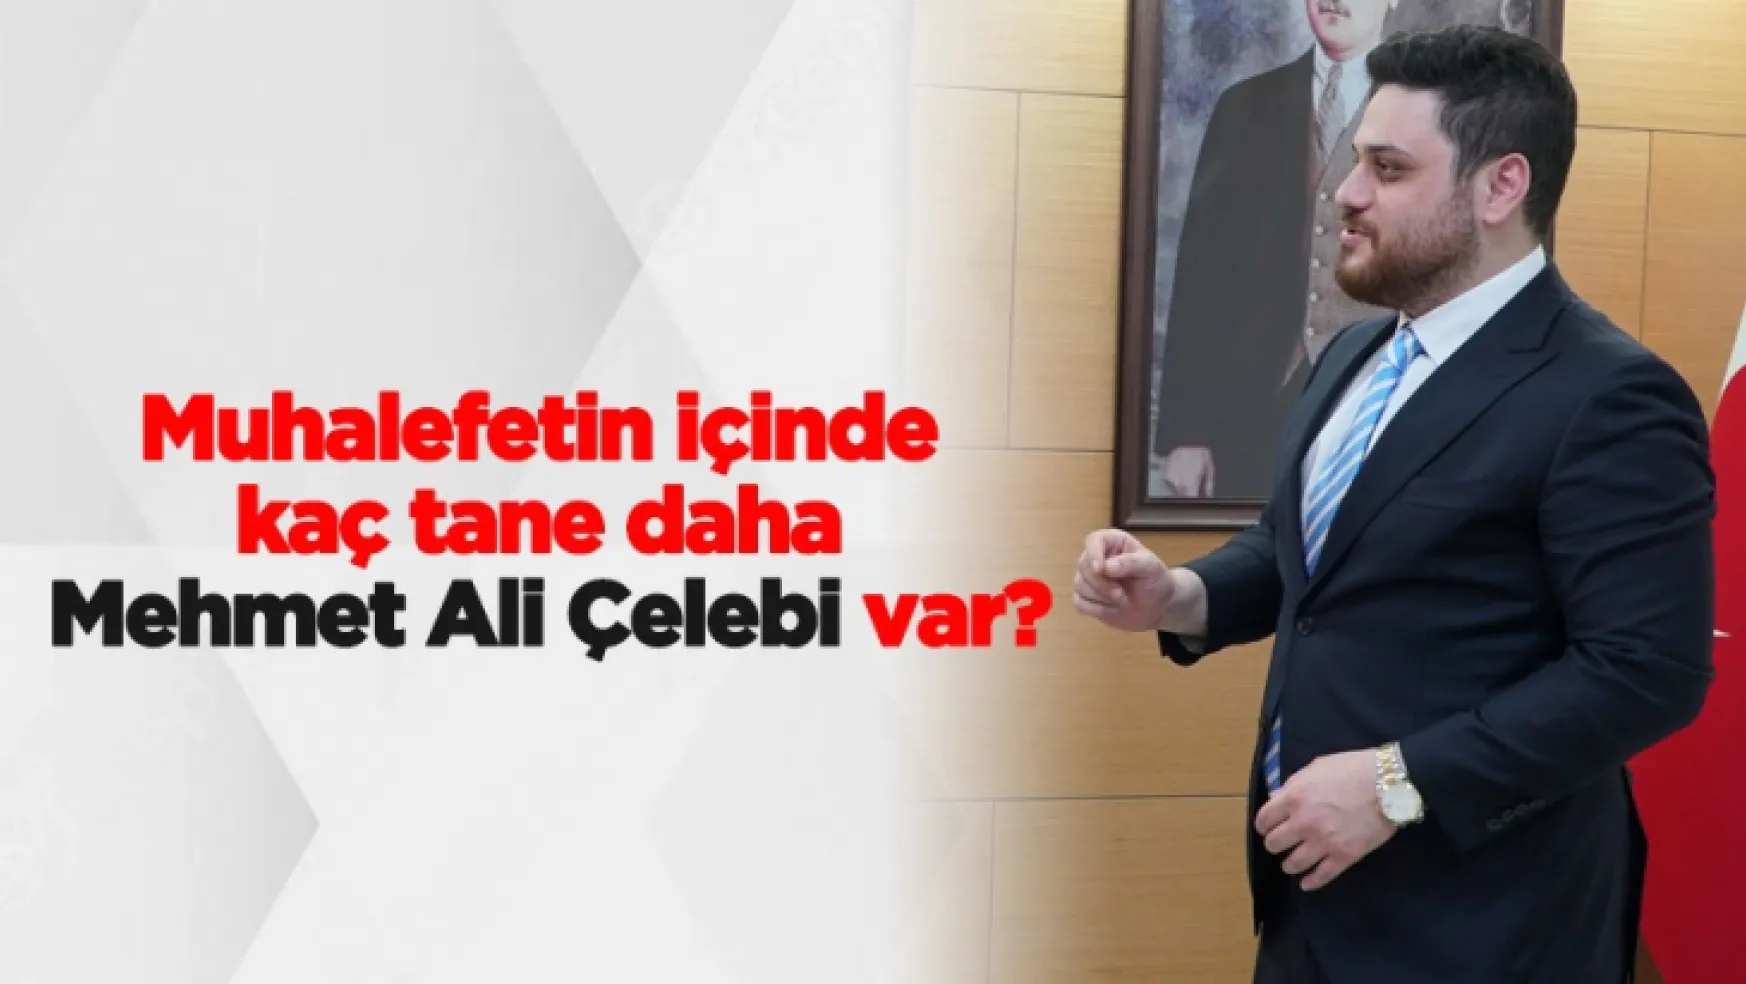 Muhalefetin içinde kaç tane daha Mehmet Ali Çelebi var?